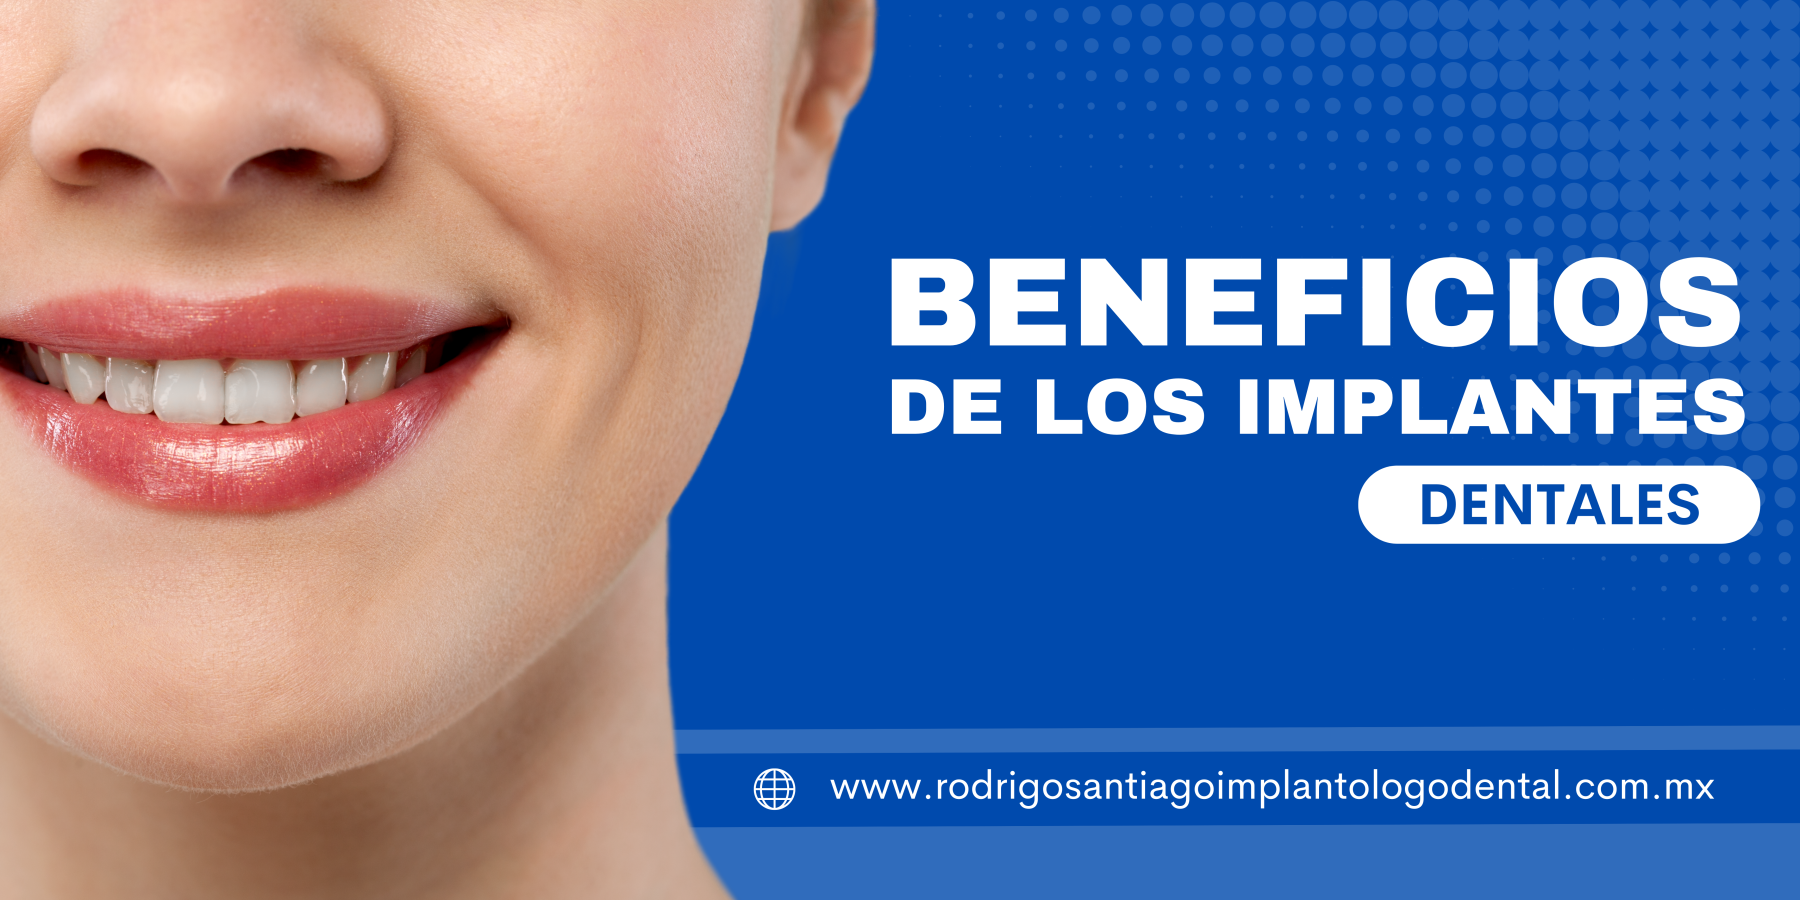 Beneficios de los implantes dentales